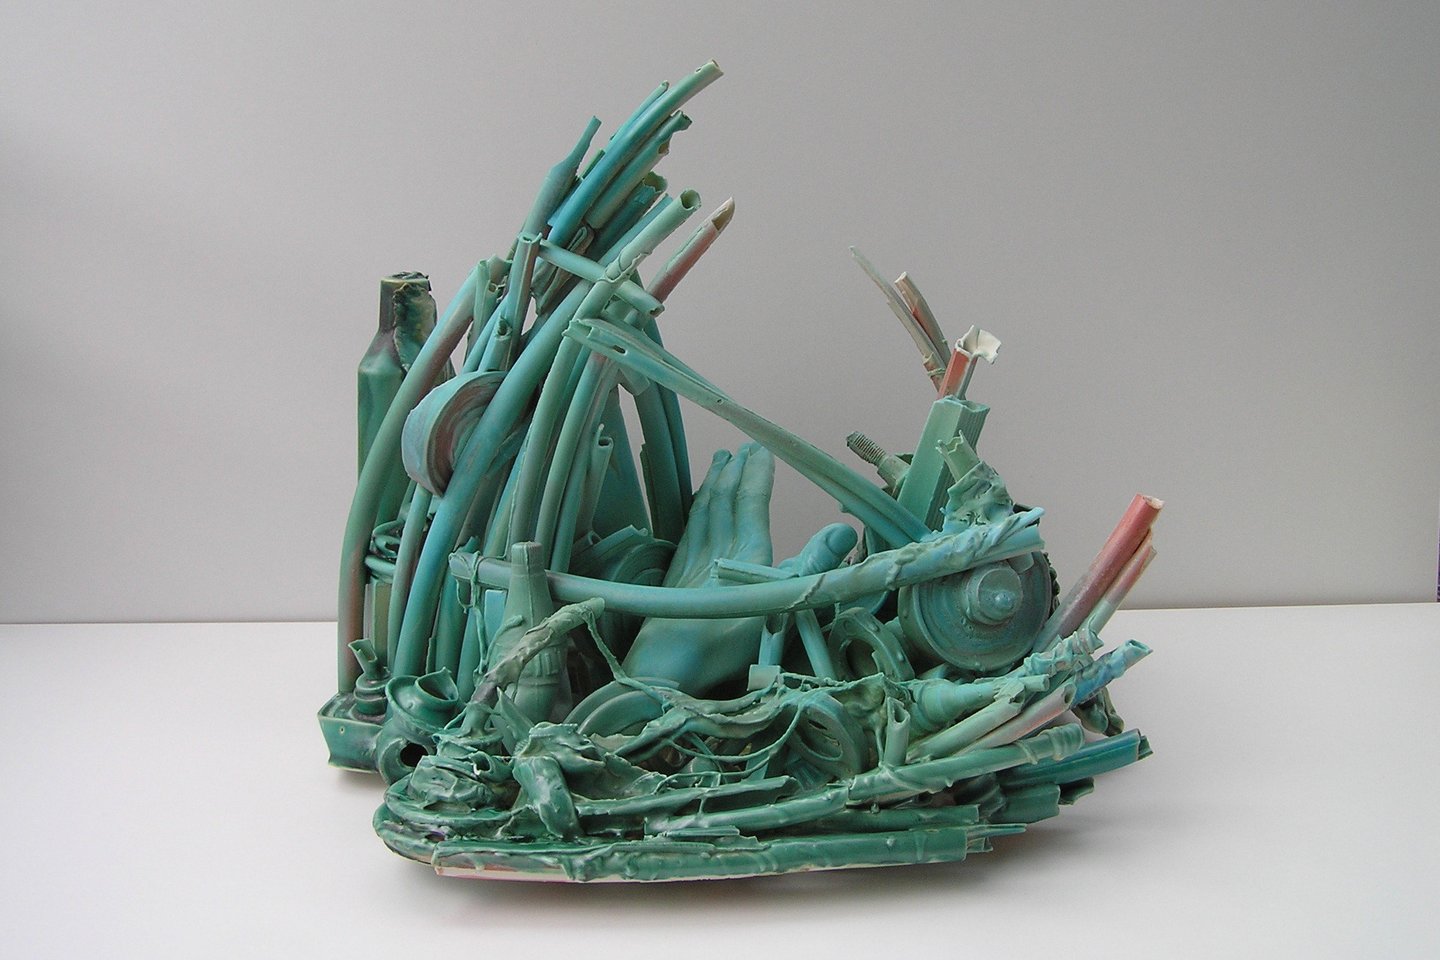 R.Pakarklytės porceliano darbas "Atostogų rojus, 2005", sukurtas po cunamio Azijoje 2004 m.<br> Organizatorių nuotr.